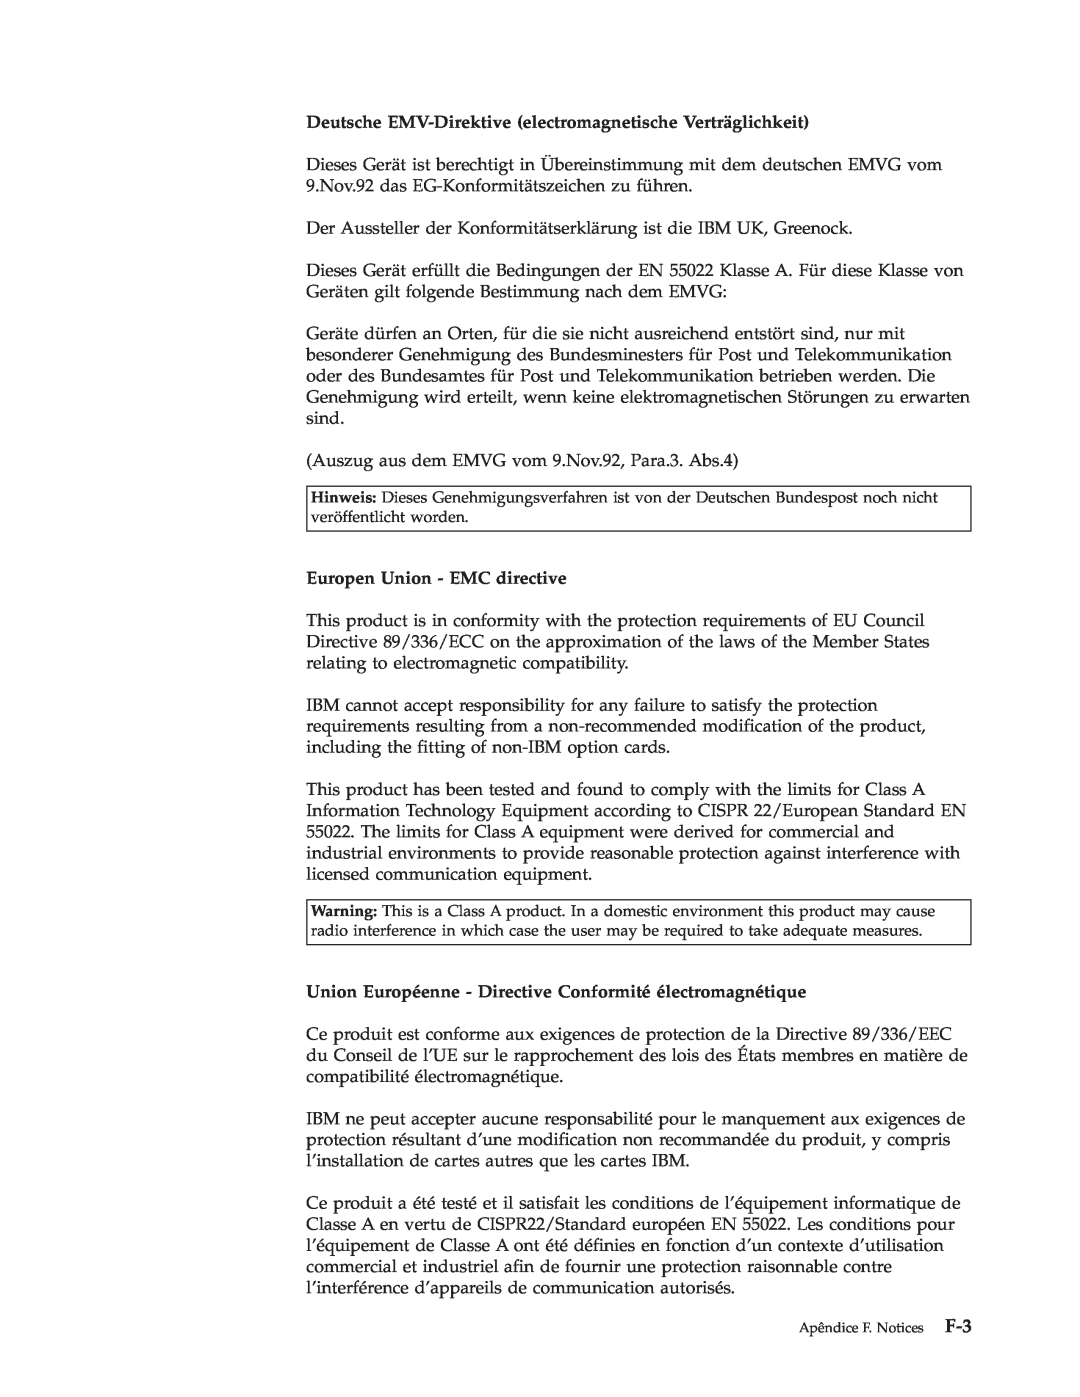 IBM M400 manual Deutsche EMV-Direktive electromagnetische Verträglichkeit, Europen Union - EMC directive 